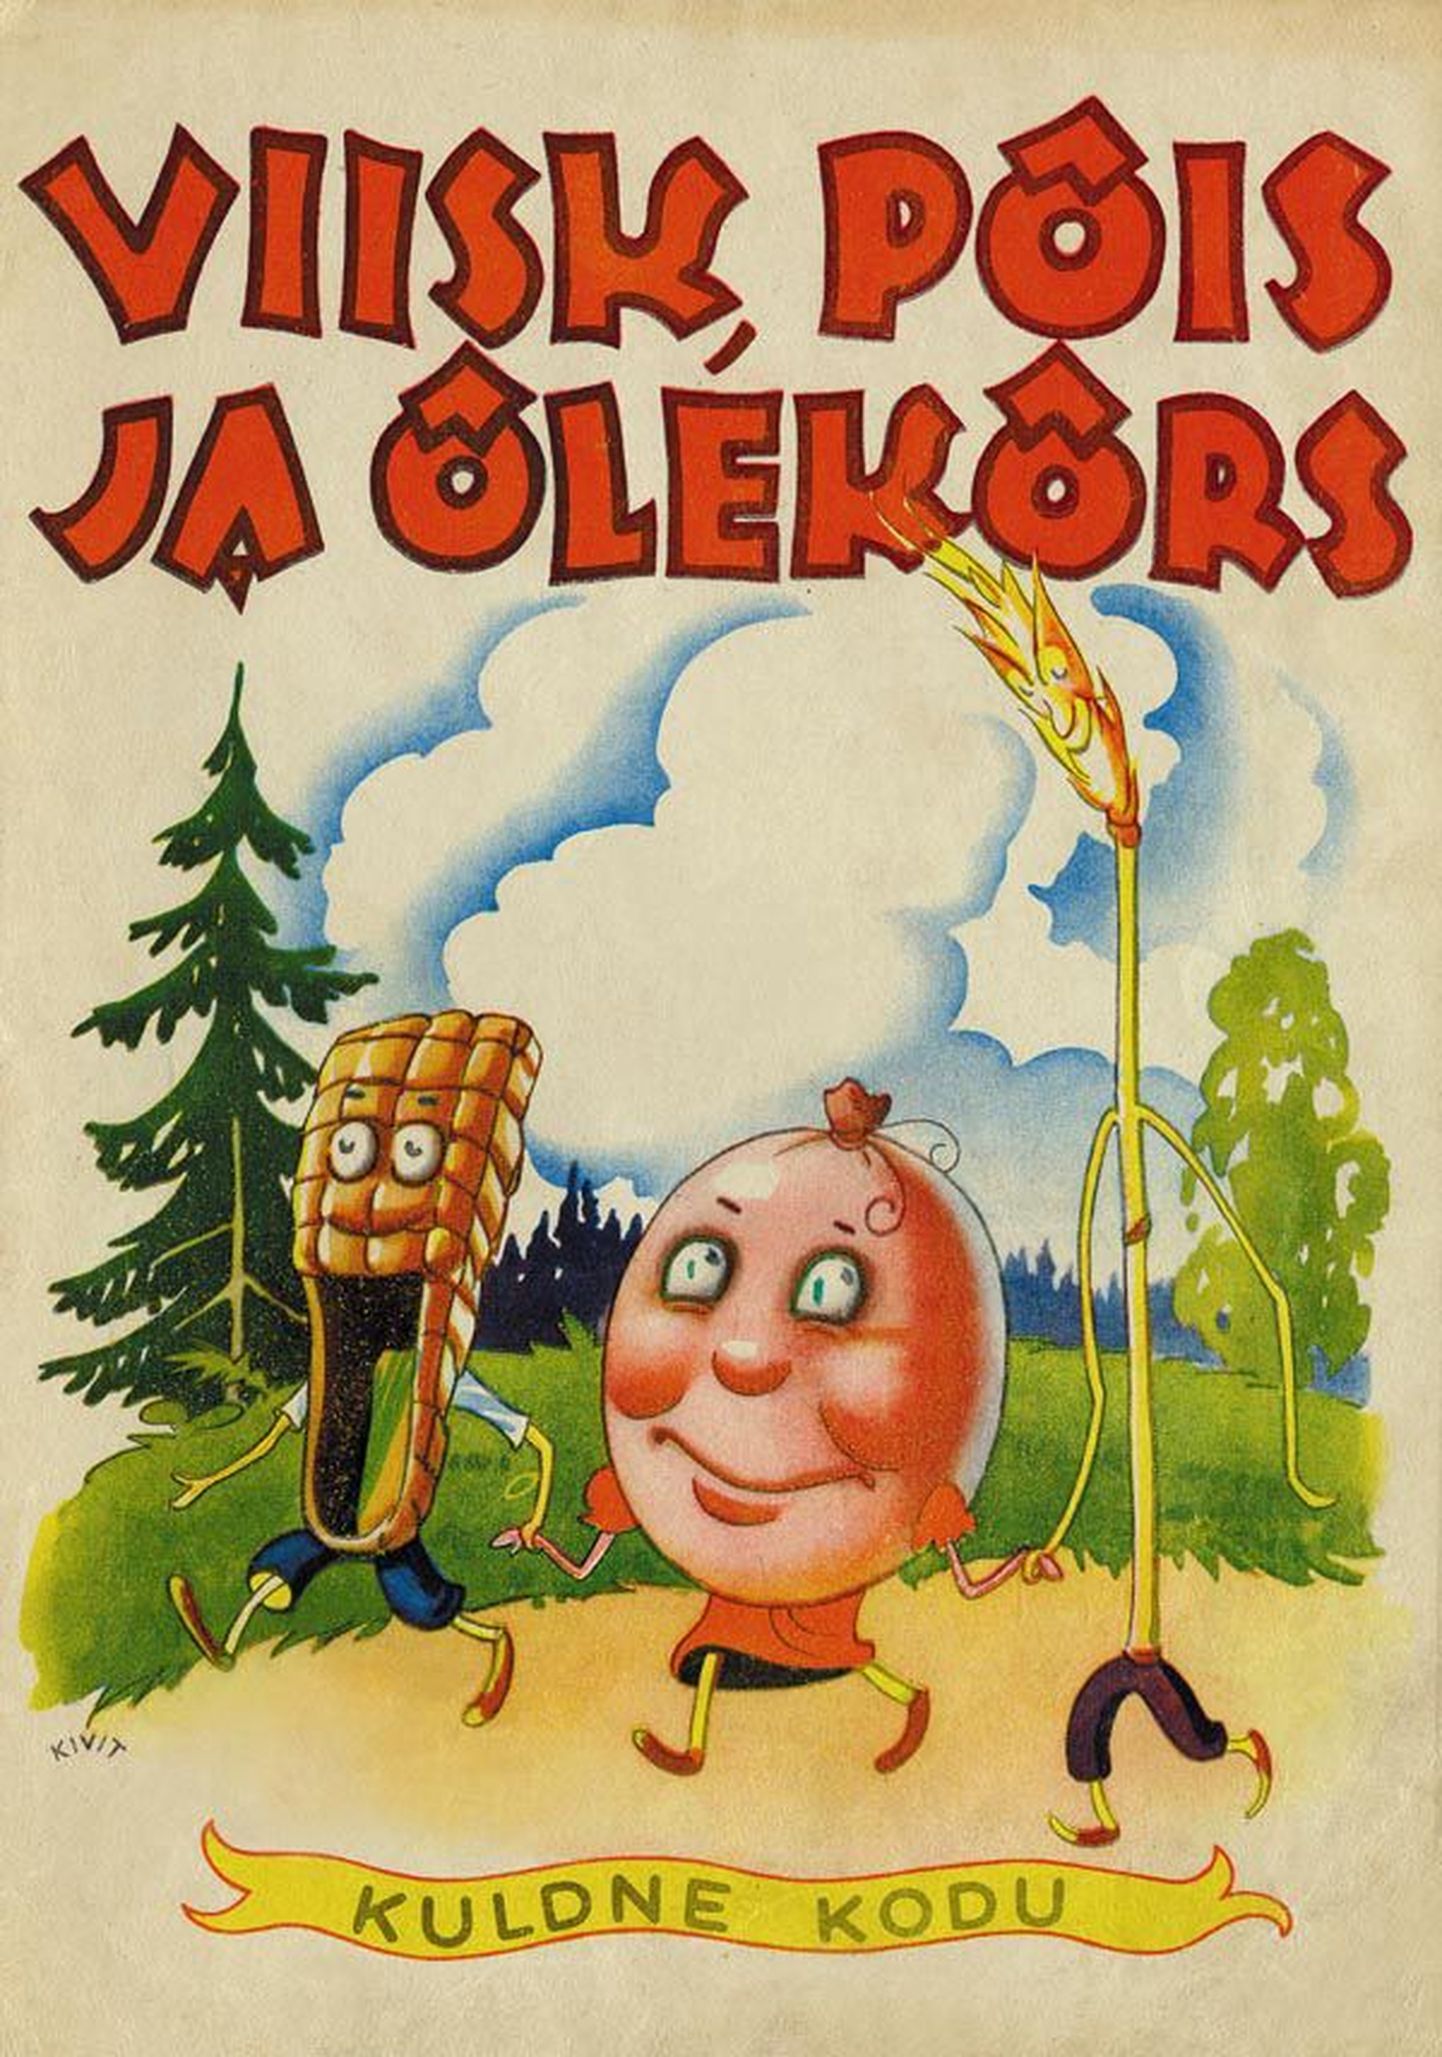 Esimest korda 1937. aastal sarjas «Kuldne kodu» ilmunud A. Piirikivi lasteraamatu «Viisk, põis ja õlekõrs» kaanepildi autor oli üliviljakas illustraator Richard Kivit.